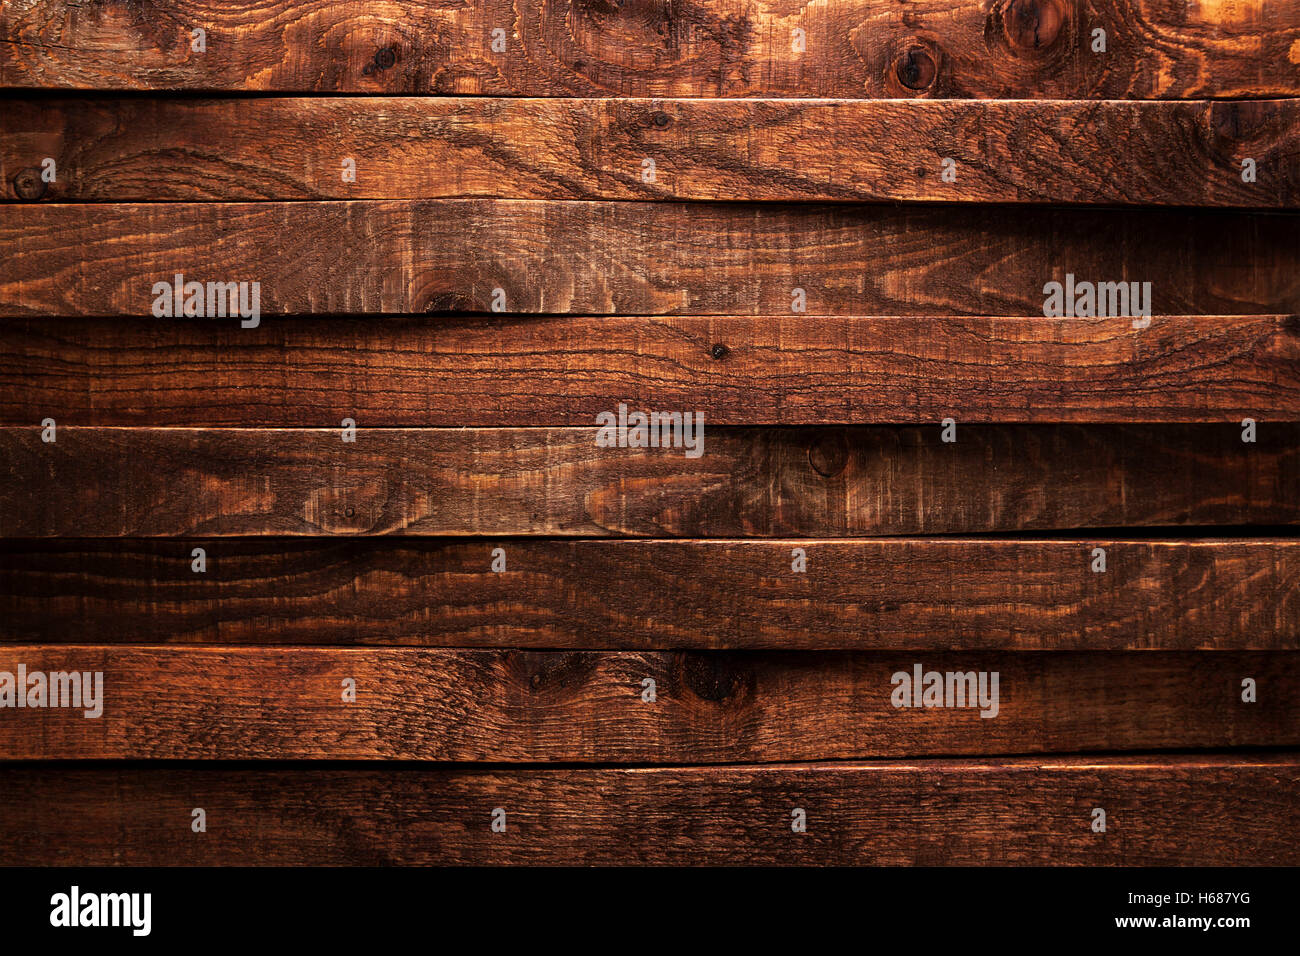 Dunkles Holz Textur. Alte hölzerne Planken Hintergrund braun. Stockfoto